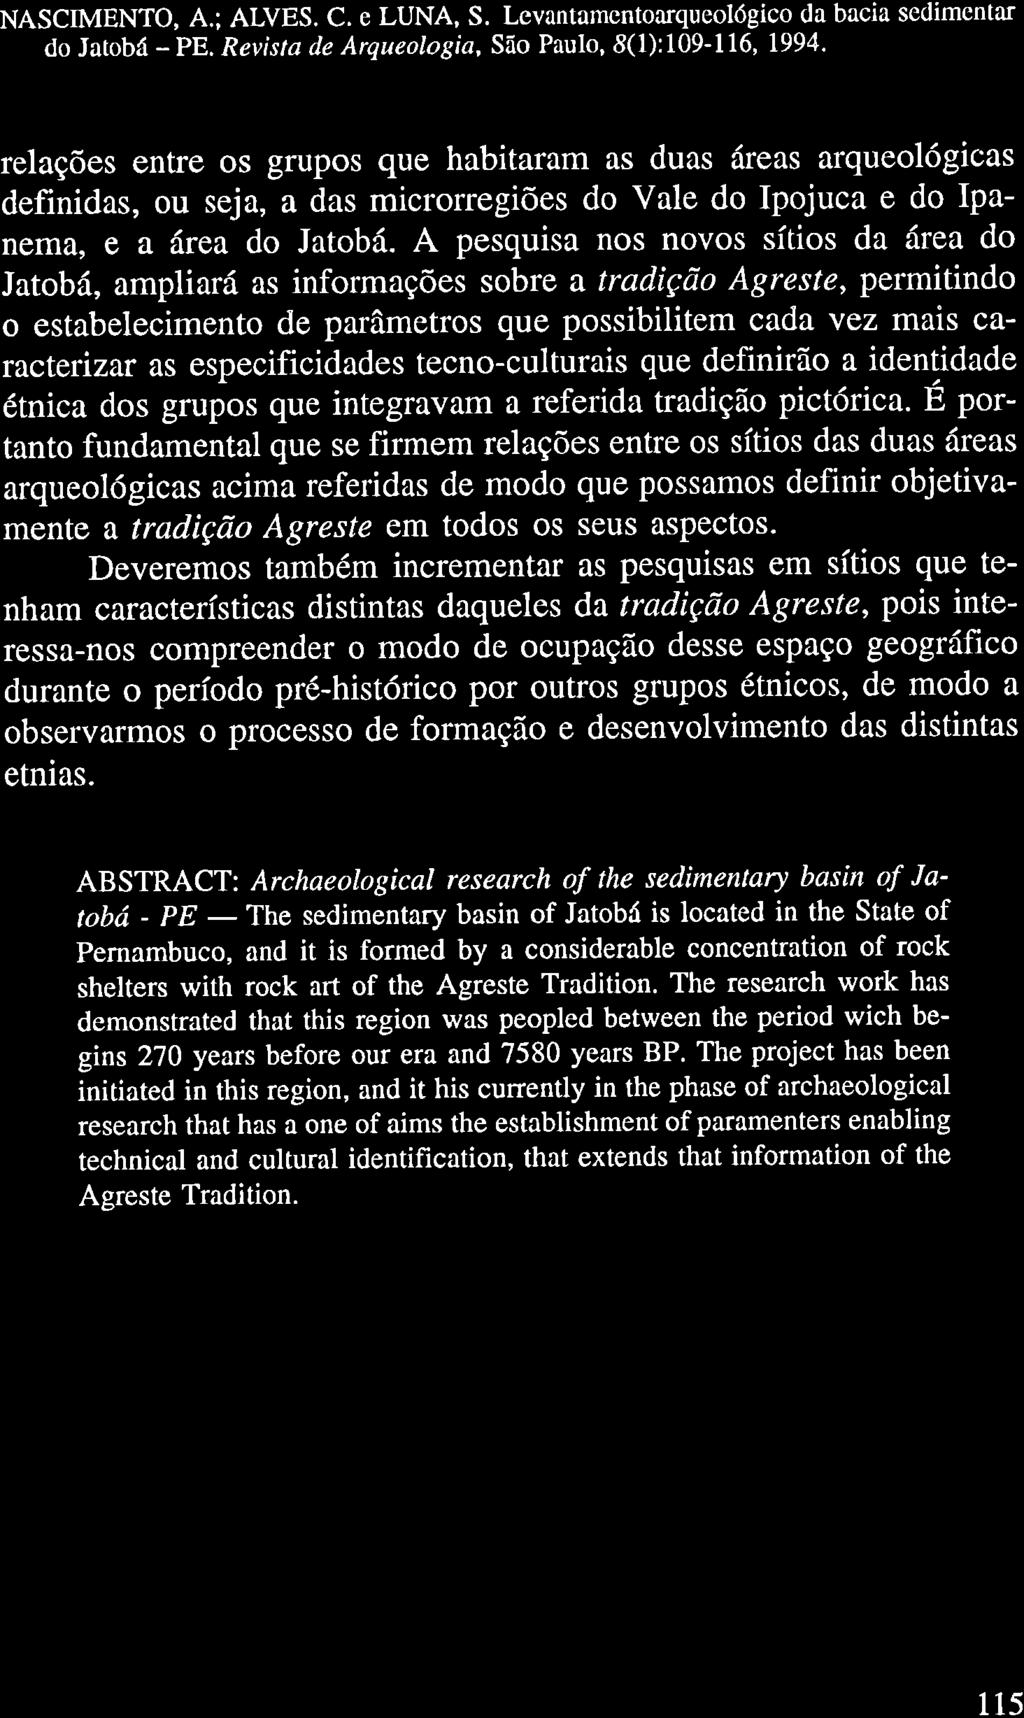 NASCIMENTO, A.; ALVES. C. e LUNA, S. Lcvantamcntoarqueológico da bacia sedimcntar do Jatobá PE. Revista de Arqueologia, São Paulo, 8(l):109116' 1994.